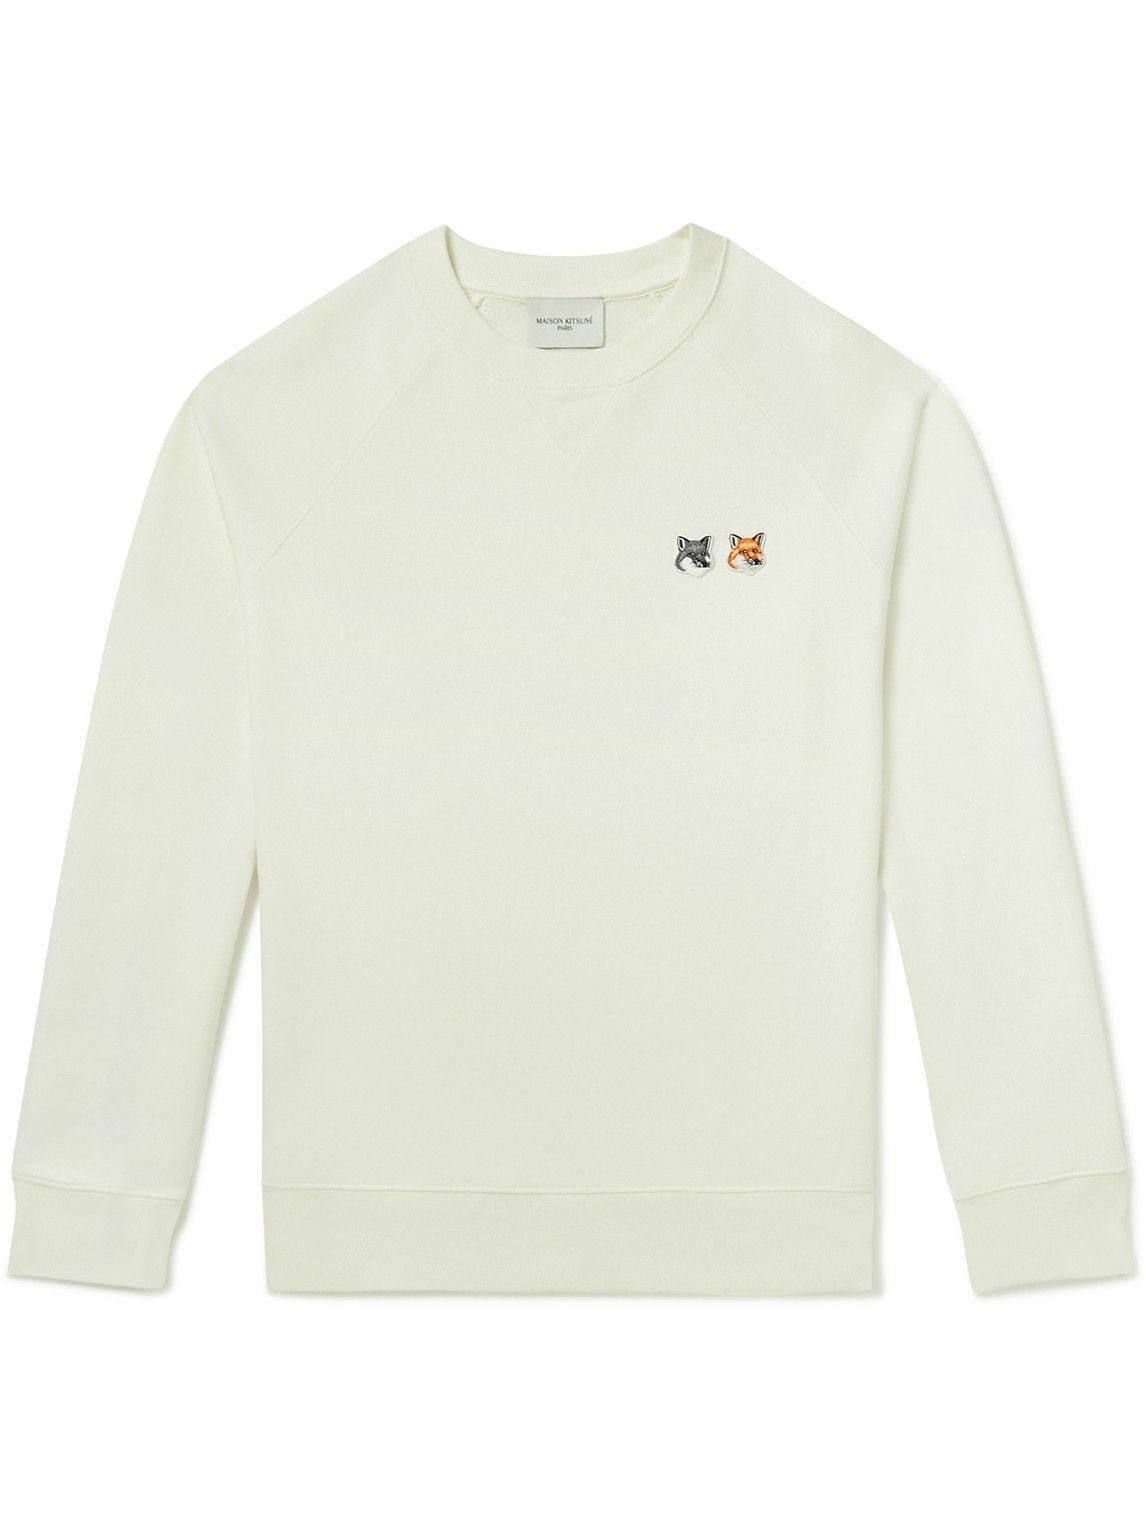 Maison Kitsuné - Logo-Appliquéd Cotton-Jersey Sweatshirt - Neutrals ...